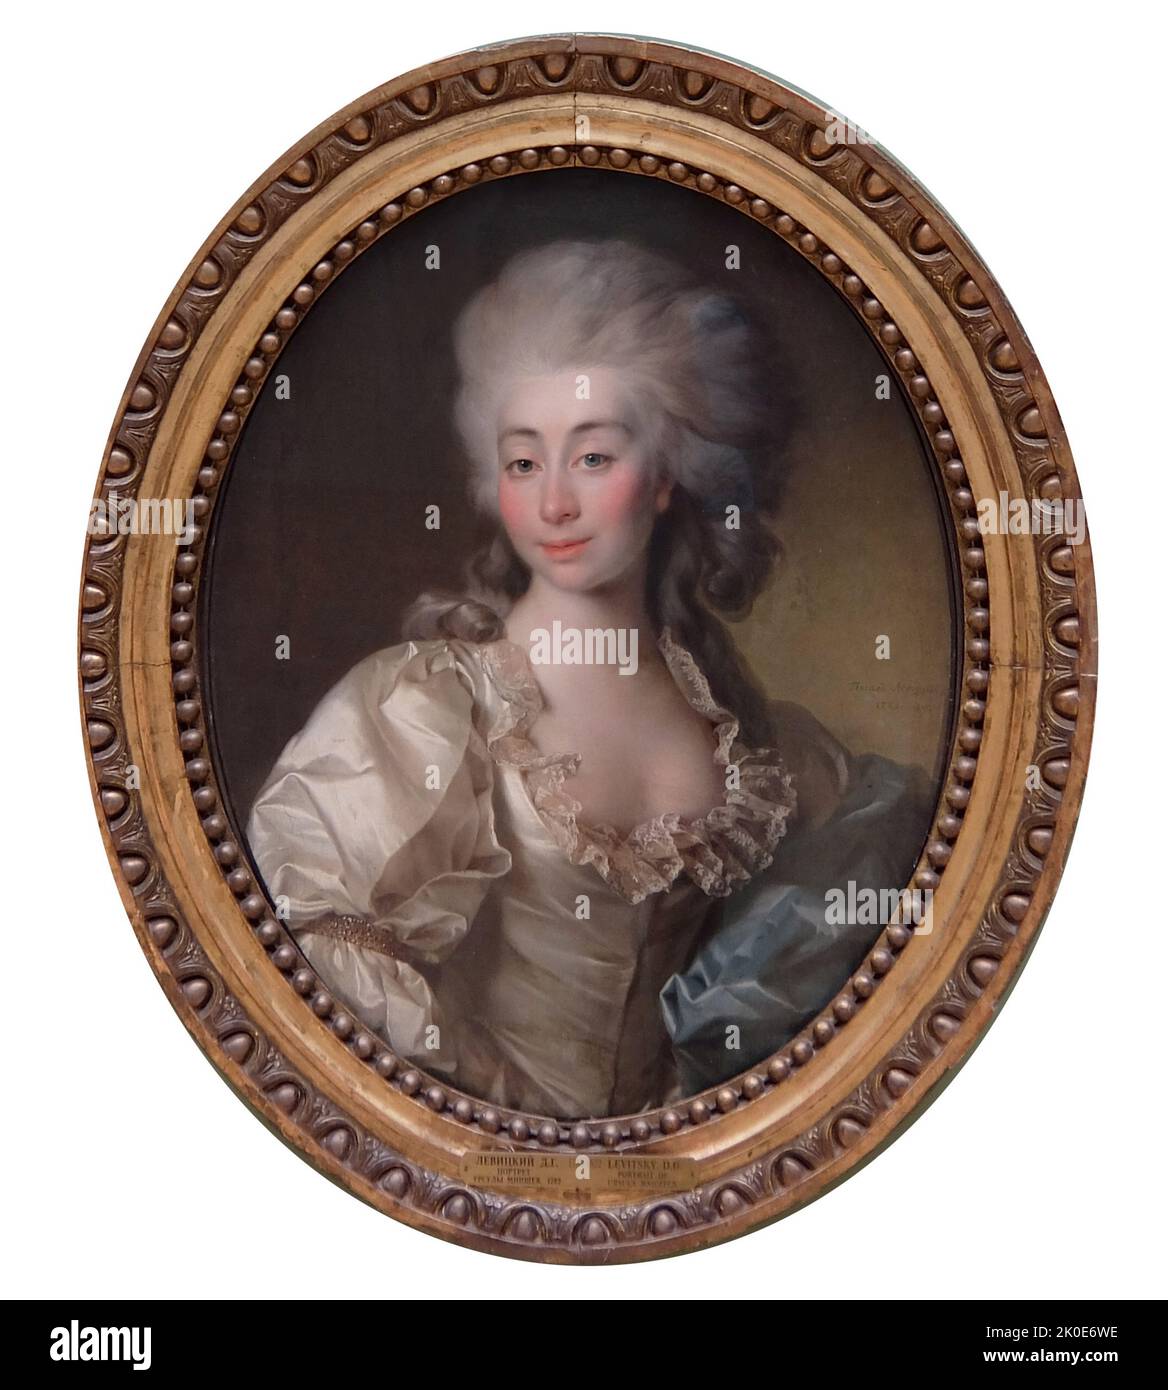 Portrait de la comtesse Ursula Mniszek par Dmitri Grigorievitch Levitsky. 1782. Dmitry Grigoryevitch Levitsky (1735 mai - 17 avril 1822) est un artiste impérial russe et peintre de la descente de Zaporozhian Cossack. Banque D'Images